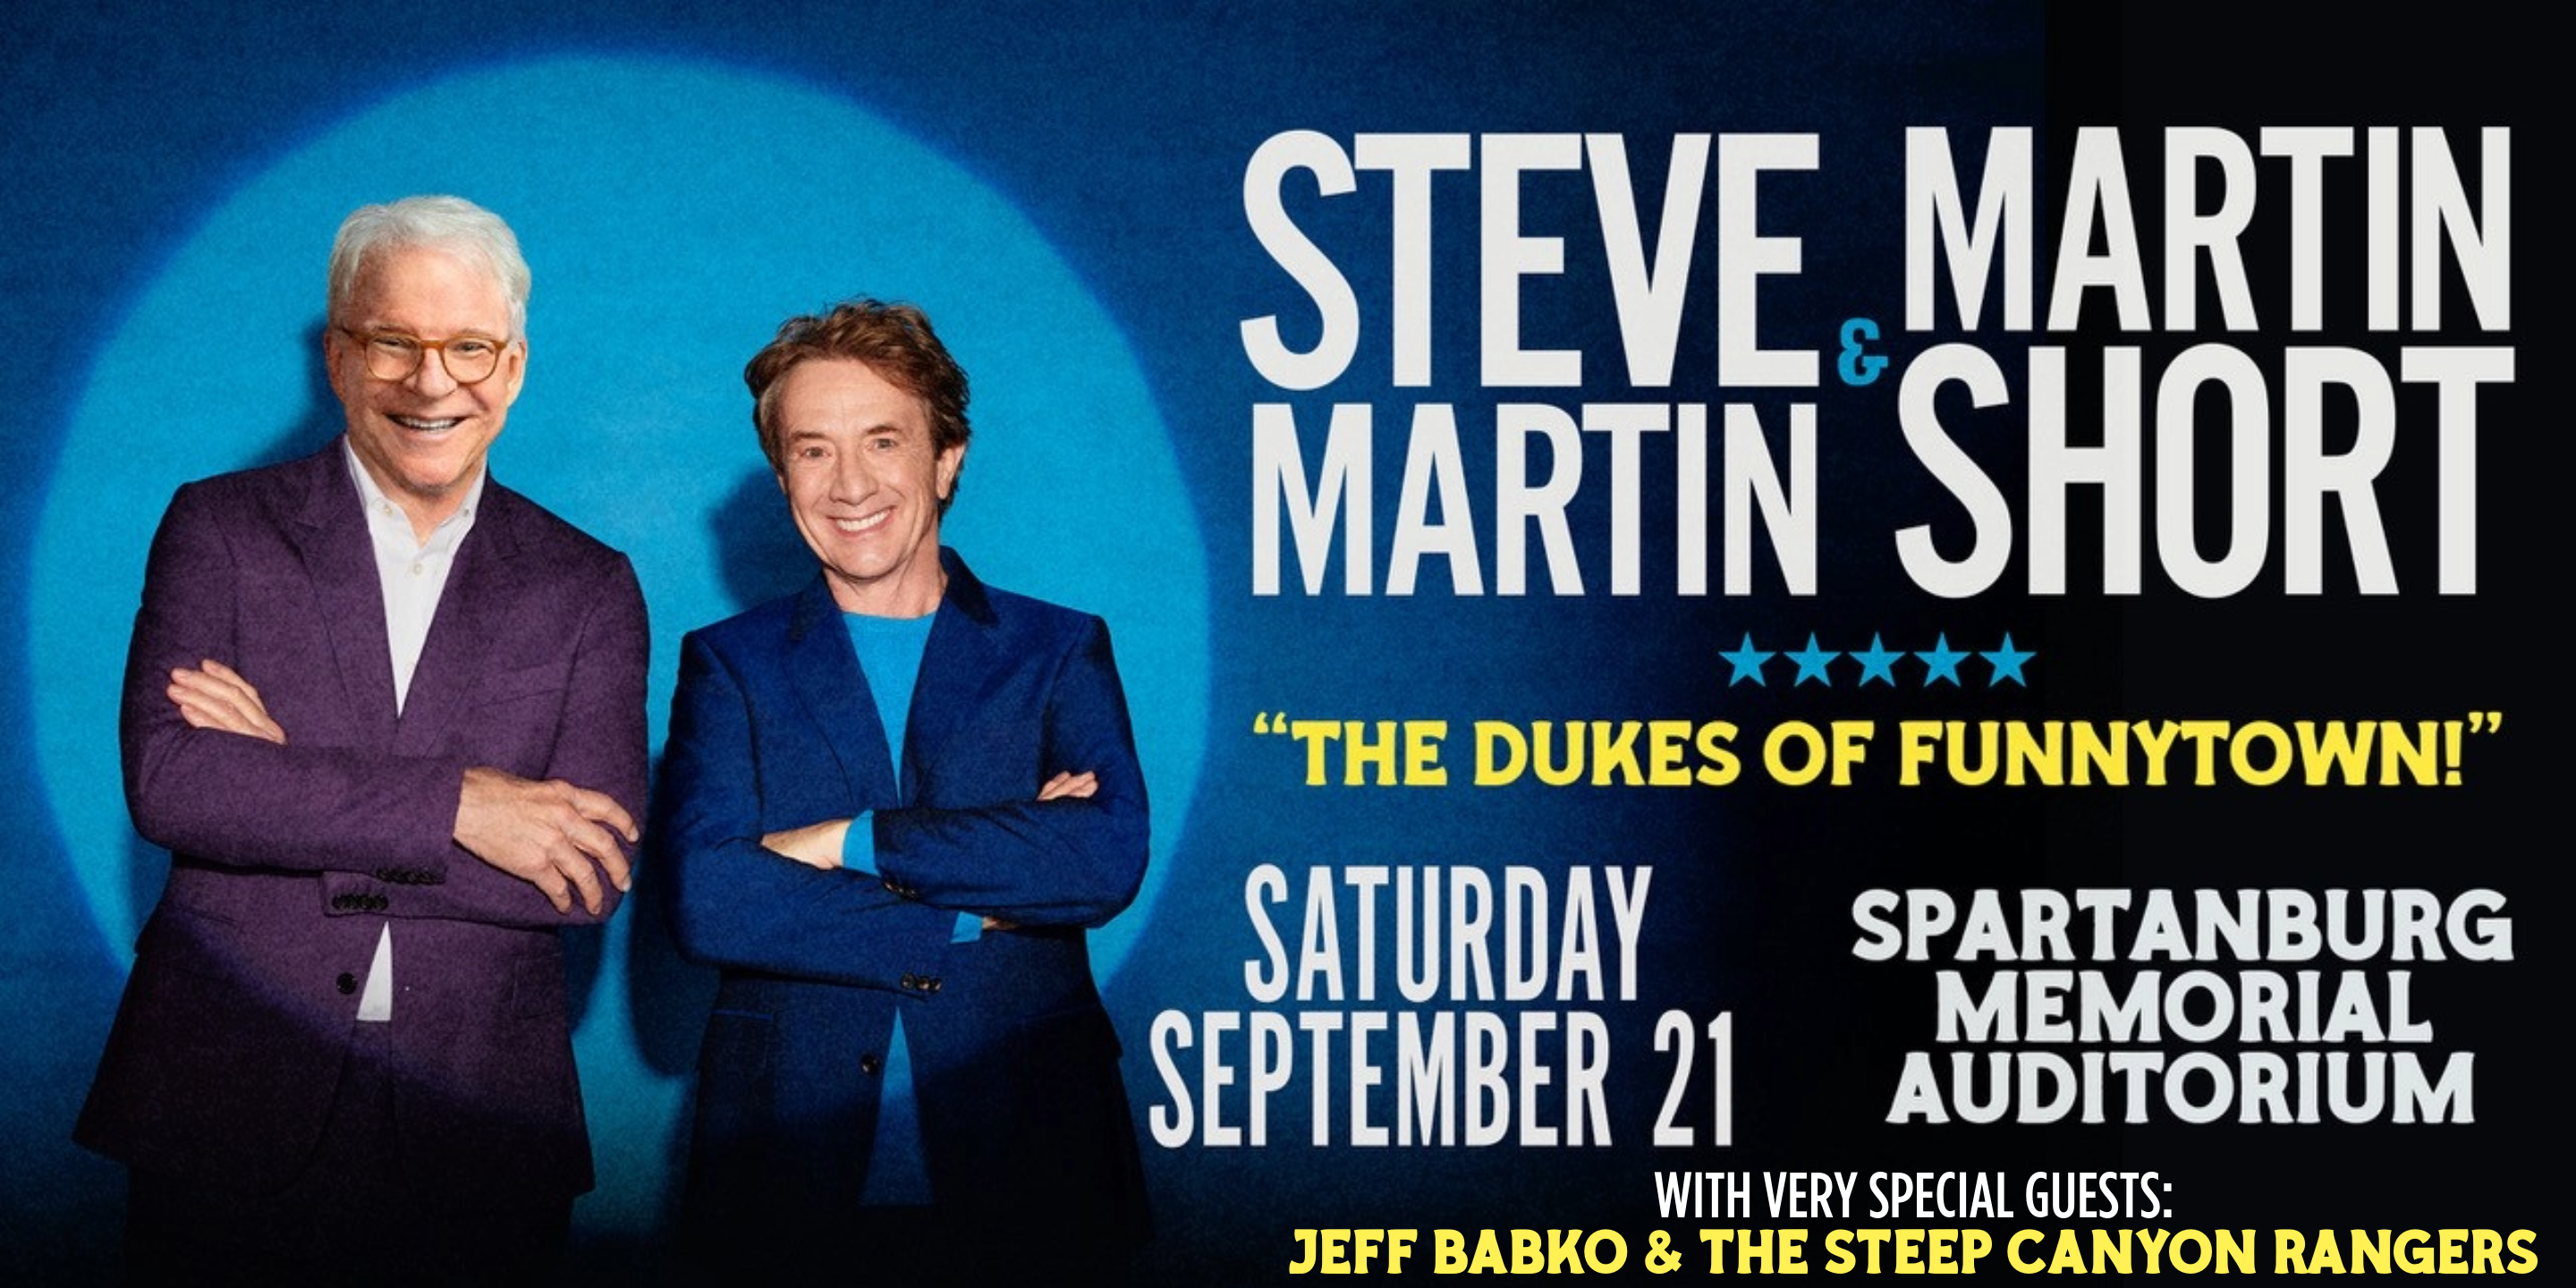 Steve Martin & Martin Short "The Dukes of Funnytown!"